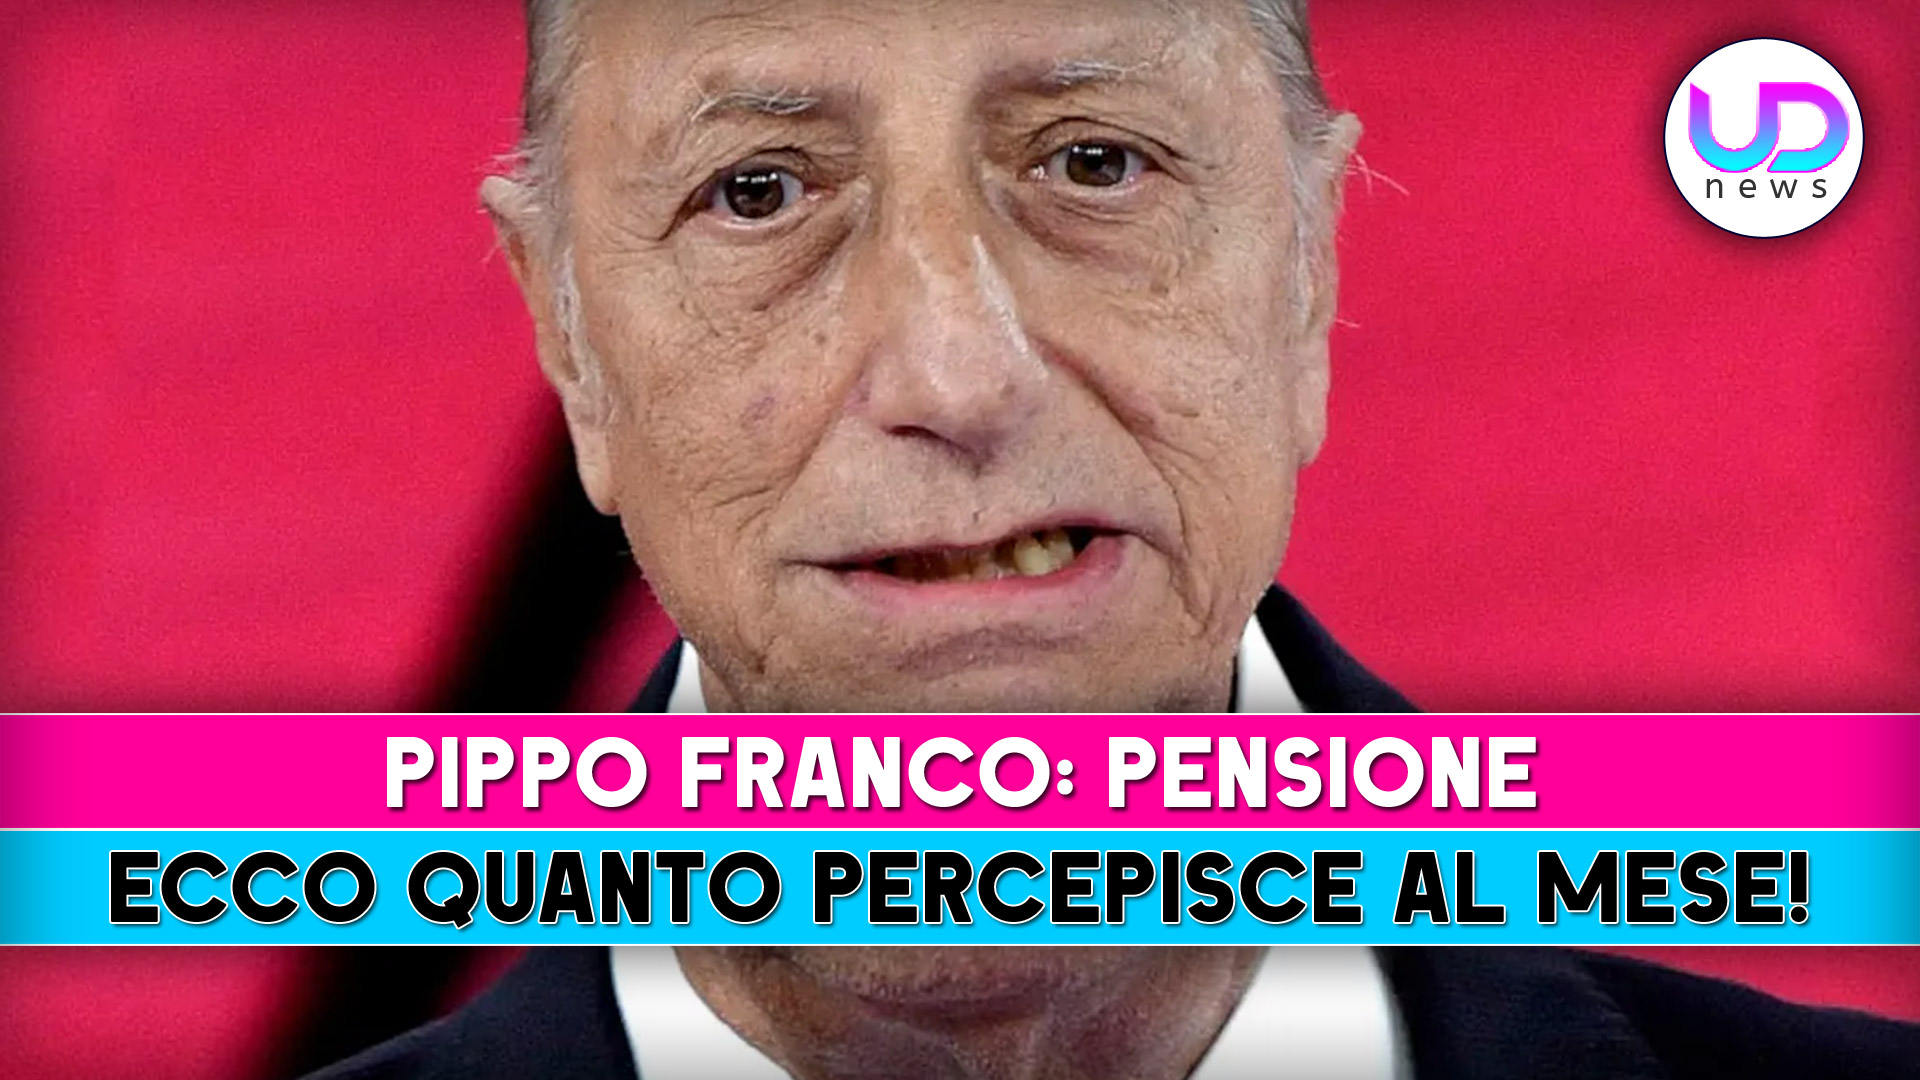 Pippo Franco: Ecco Quanto Prende Di Pensione!